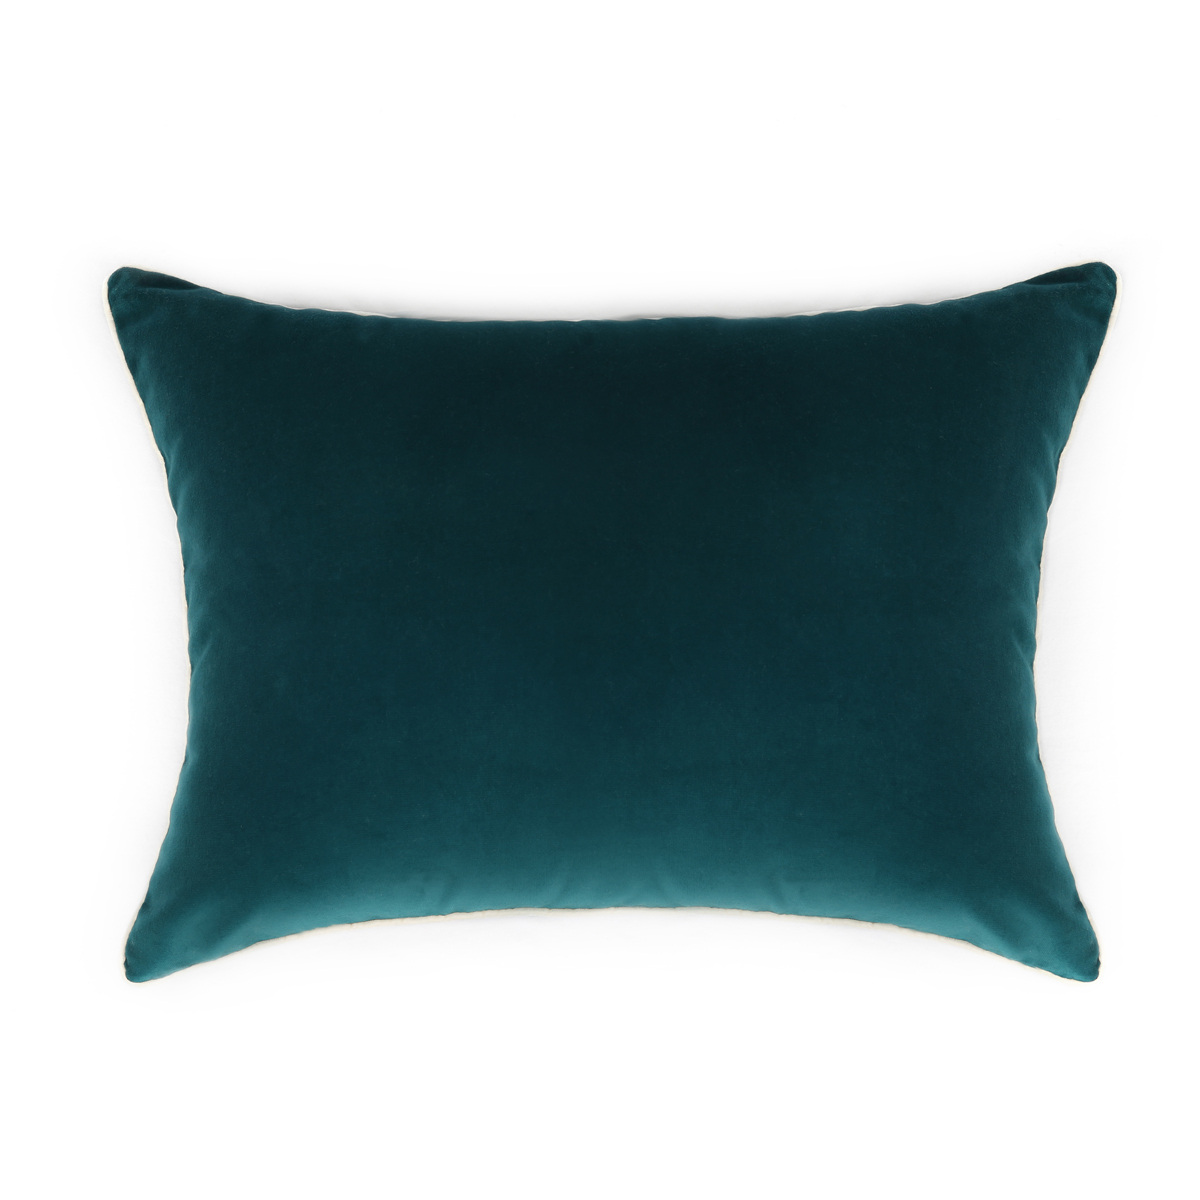 Cushion Double Jeu, Blue / Black Radish - 55 x 40 cm - Cotton velvet - image 5